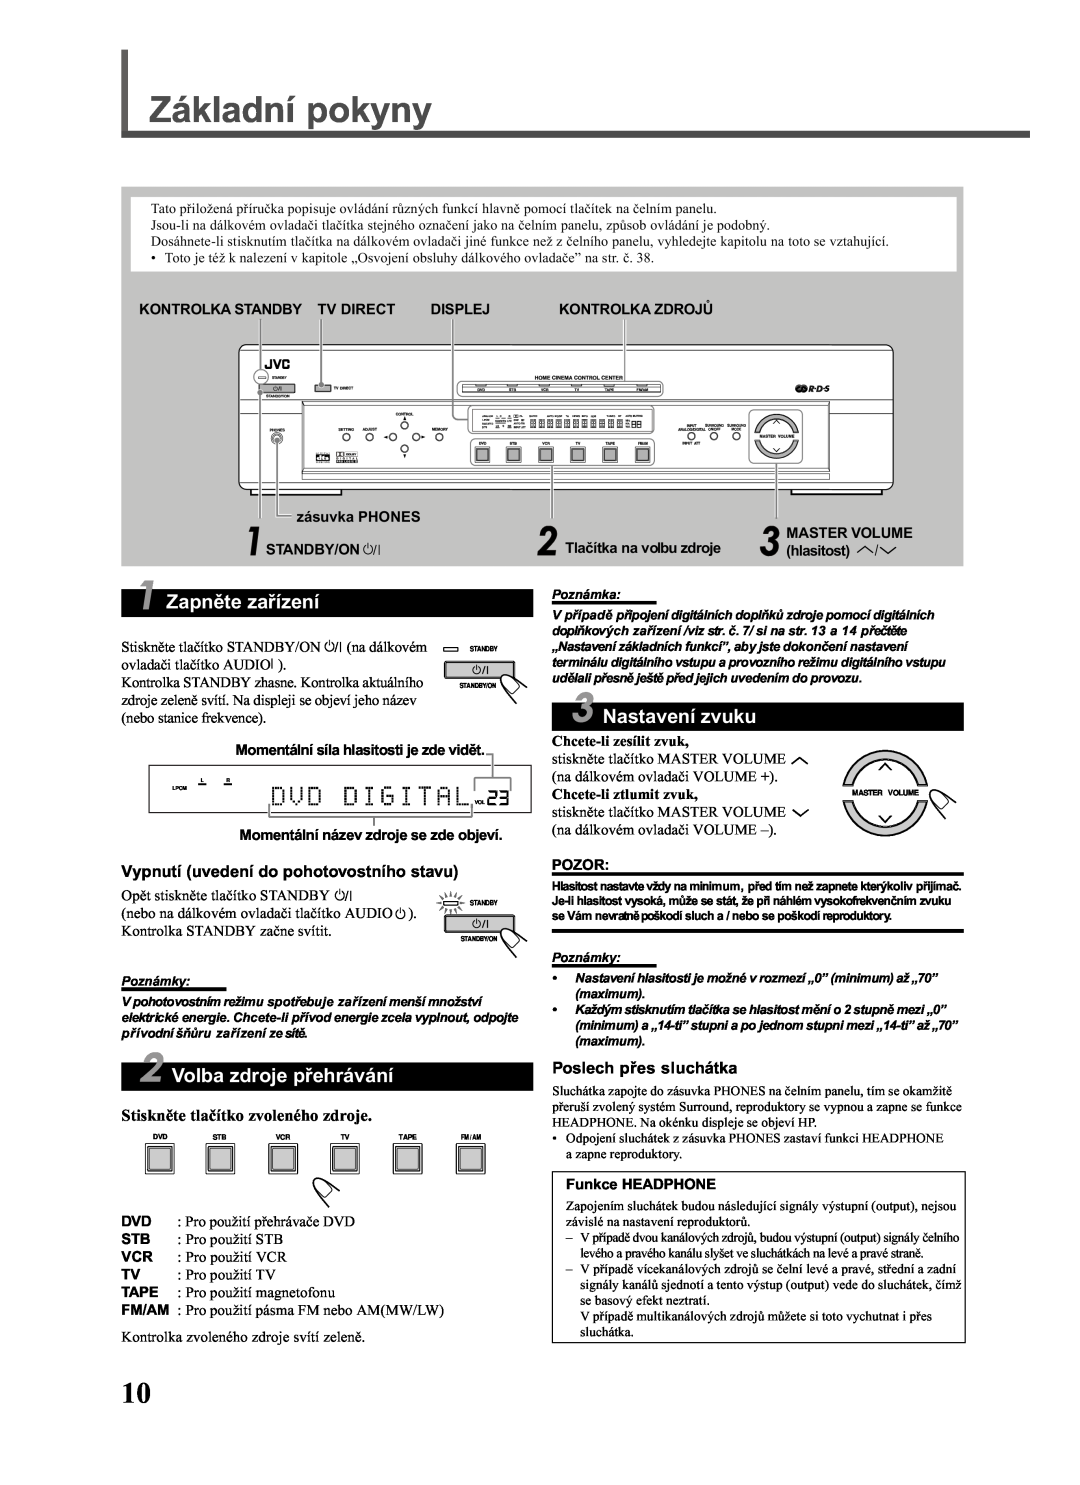 JVC RX-E111RSL manual Základní pokyny, Zapnìte zaøízení, Nastavení zvuku, Volba zdroje pøehrávání, Poslech pøes sluchátka 